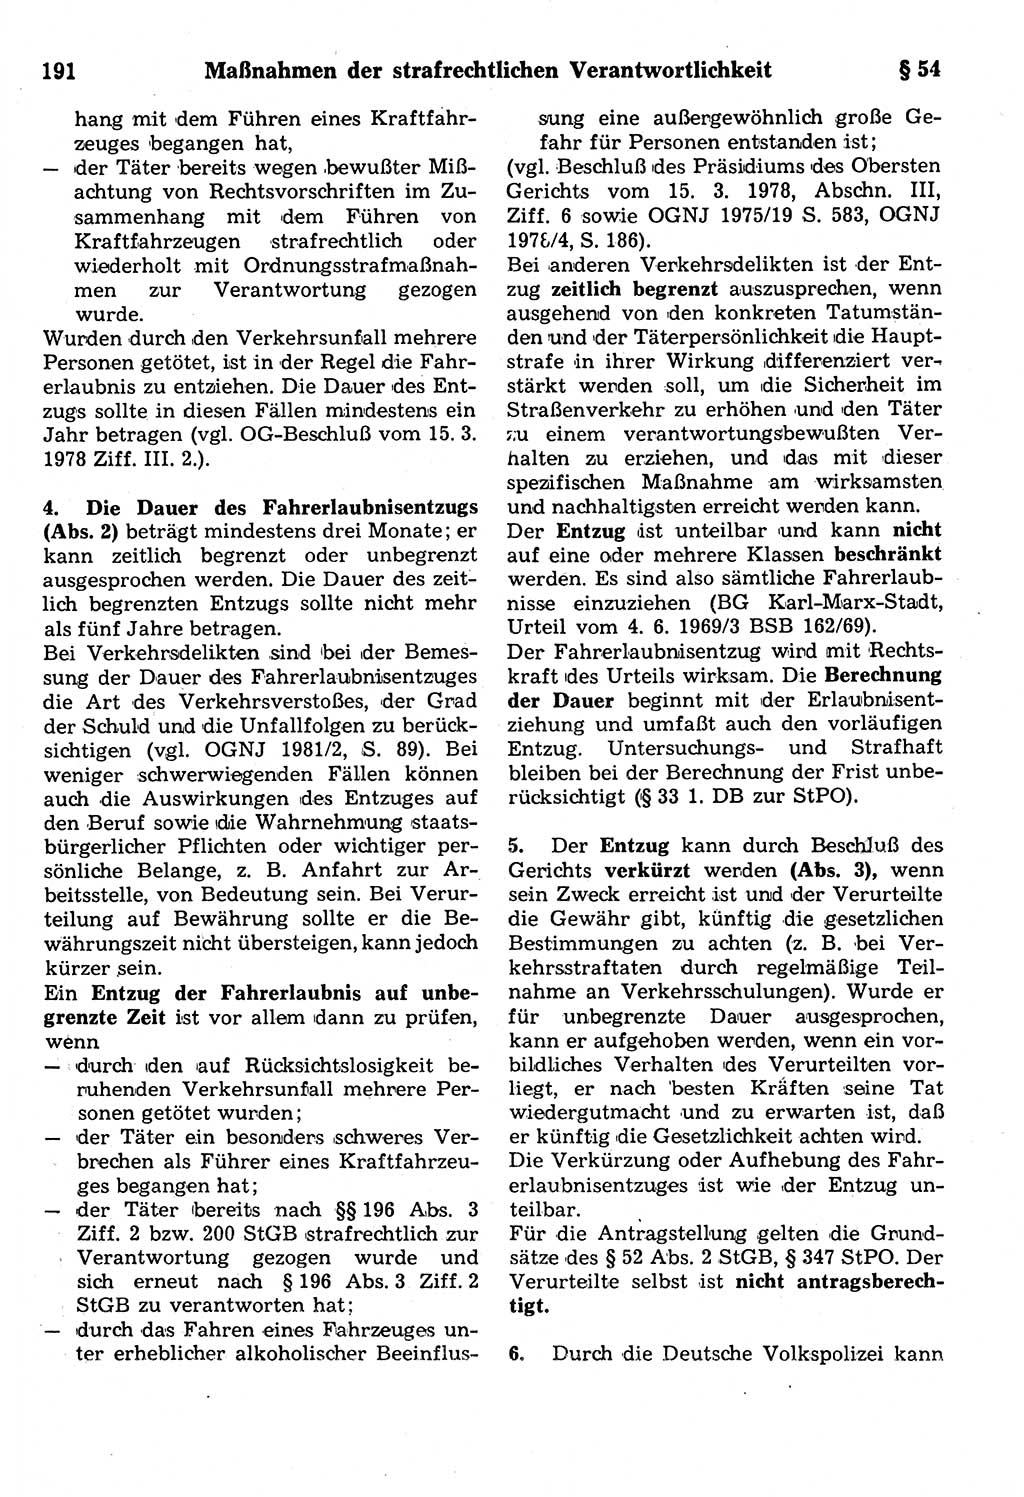 Strafrecht der Deutschen Demokratischen Republik (DDR), Kommentar zum Strafgesetzbuch (StGB) 1987, Seite 191 (Strafr. DDR Komm. StGB 1987, S. 191)